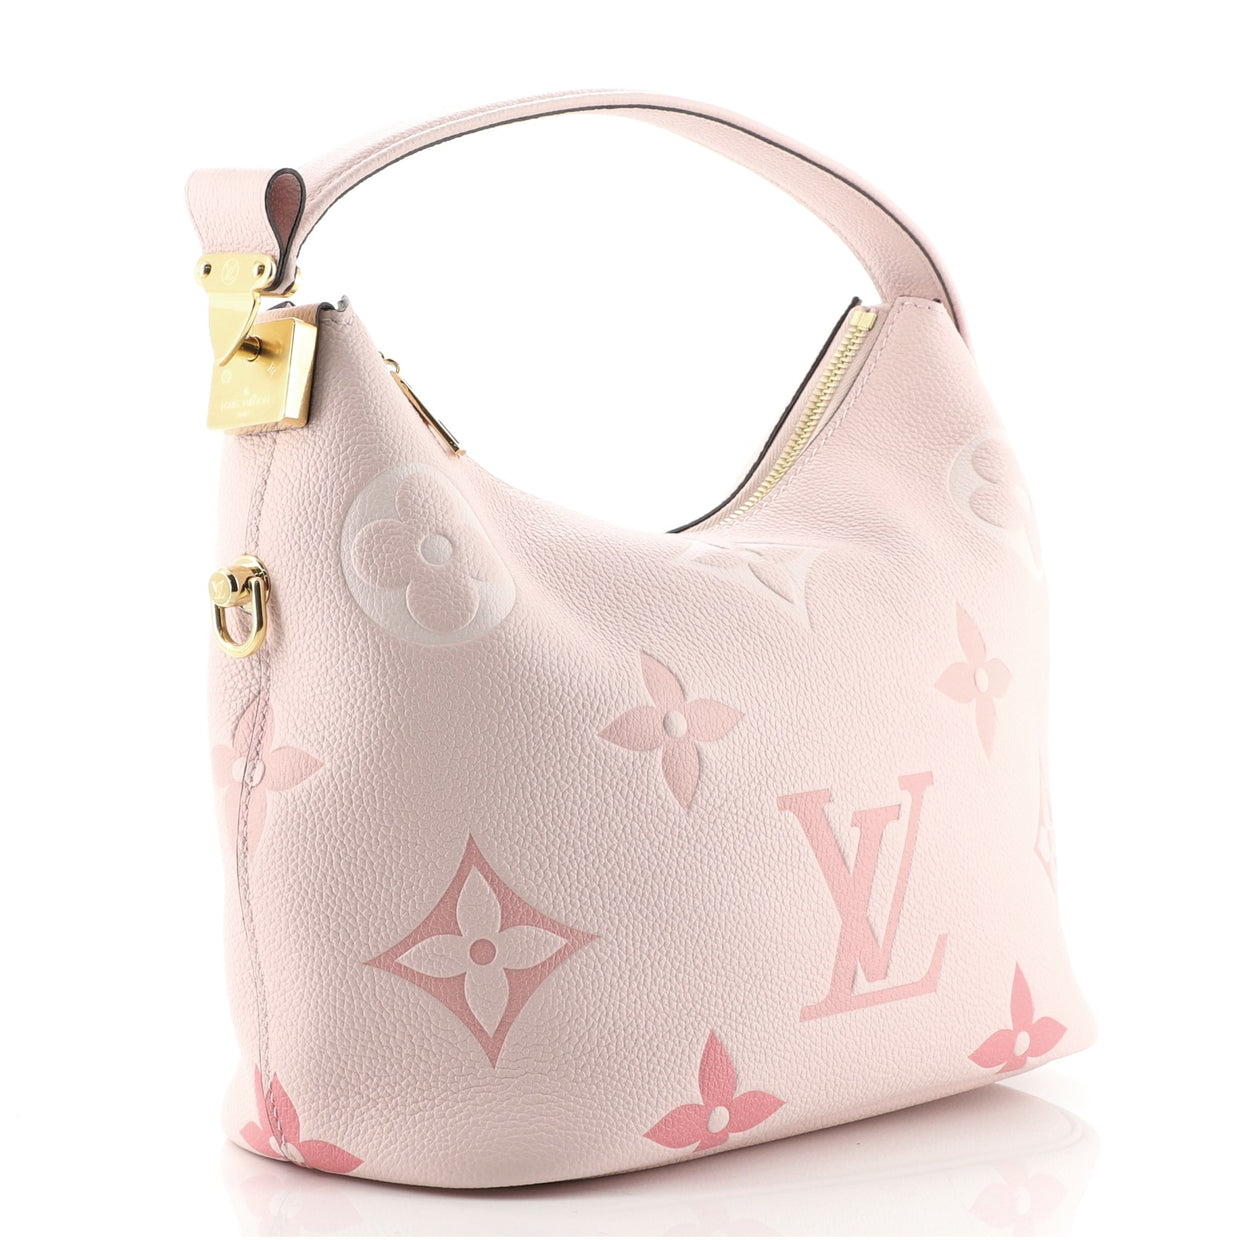 Louis Vuitton Marshmallow Bag By The Pool Monogram Empreinte Giant Pink ...